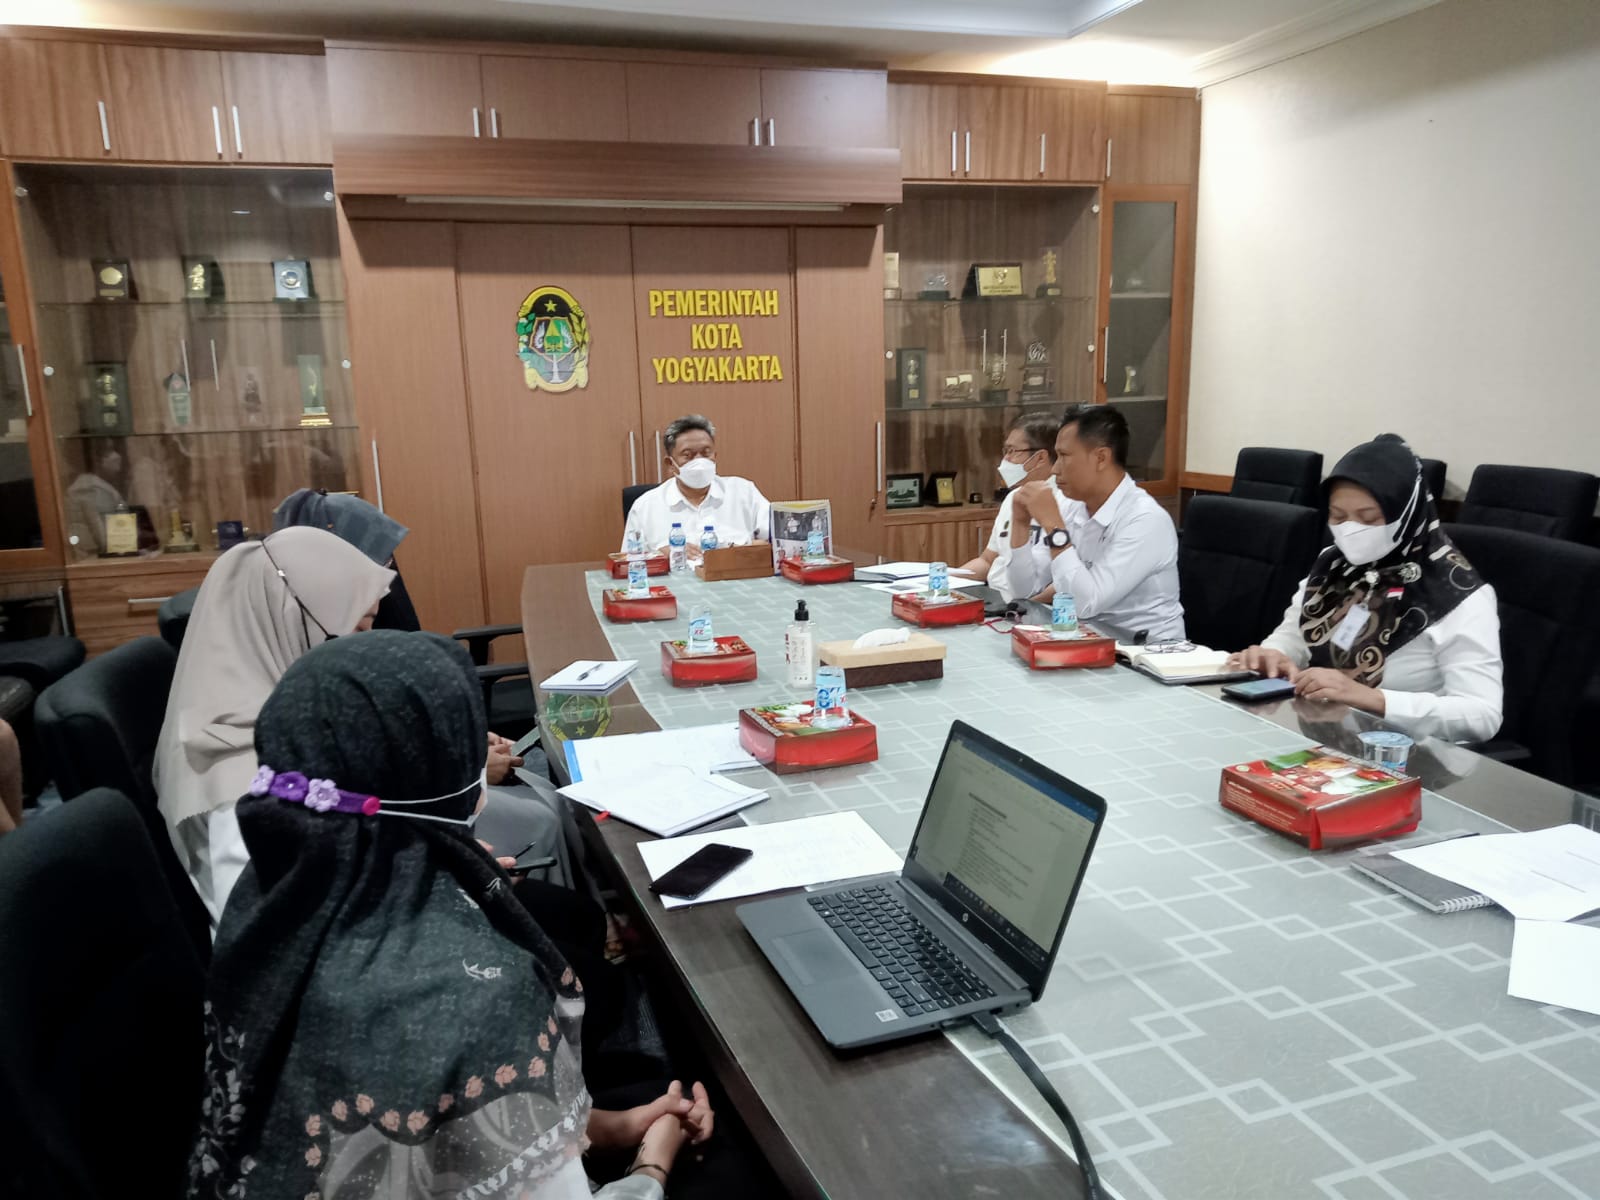 Sambut HUT Korpri, DP Korpri Kota Yogyakarta Persiapkan Acara dengan Maksimal